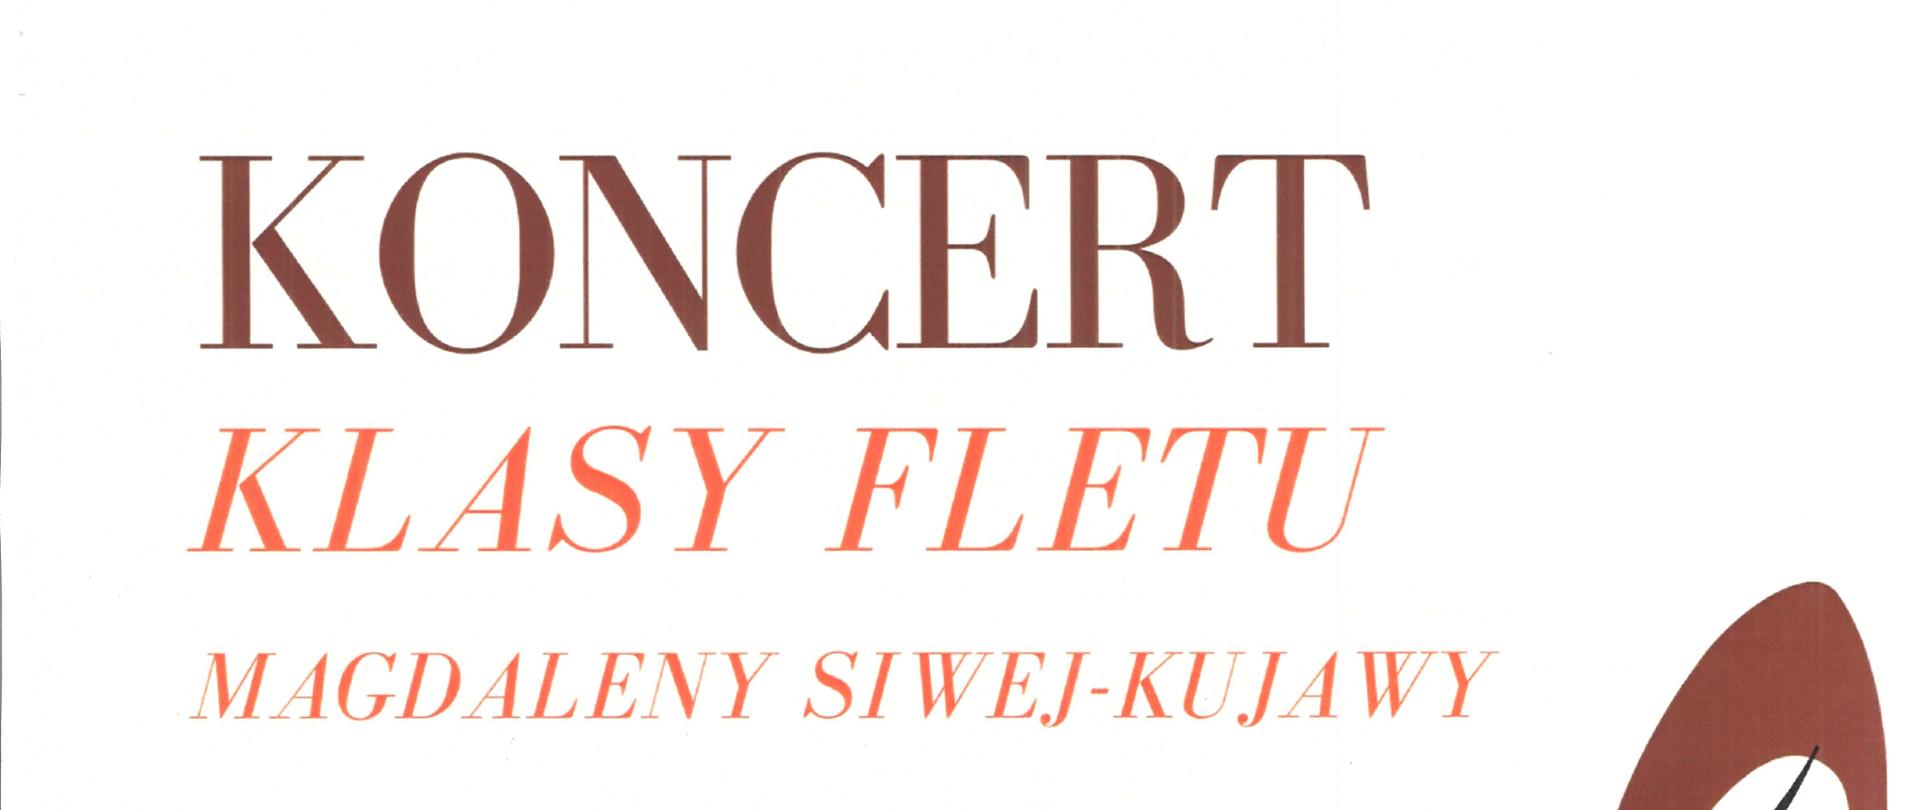 Plakat z wydarzeniem - koncertem klasy fletu p. Magdaleny Siwej - Kujawy, który odbędzie się 2 czerwca 2023r. o godz. 18:00 w sali nr 39 ZPSM w Dębicy, na plakacie umieszczono napisy w kolorze brązowym i pomarańczowym , tło plakatu białe, po prawej stronie znajduje się duży klucz wiolinowy otoczony pięciolinią z nutami, po lewej czarny stronie szkic flecisty